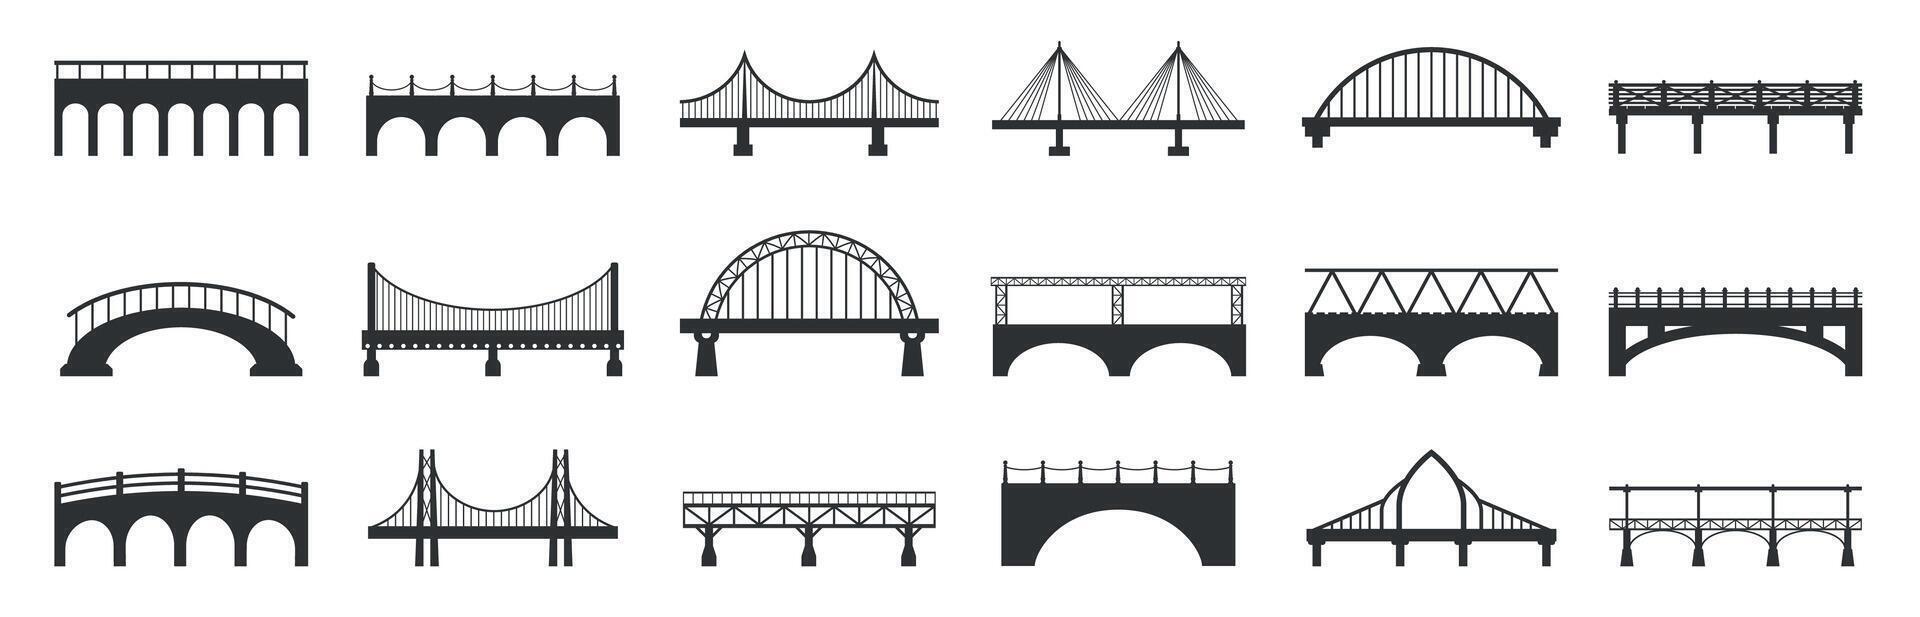 ponte silhueta. abstrato passarela construções com pedra metal vigas, industrial urbano arquitetura construção Preto ícones. vetor isolado conjunto